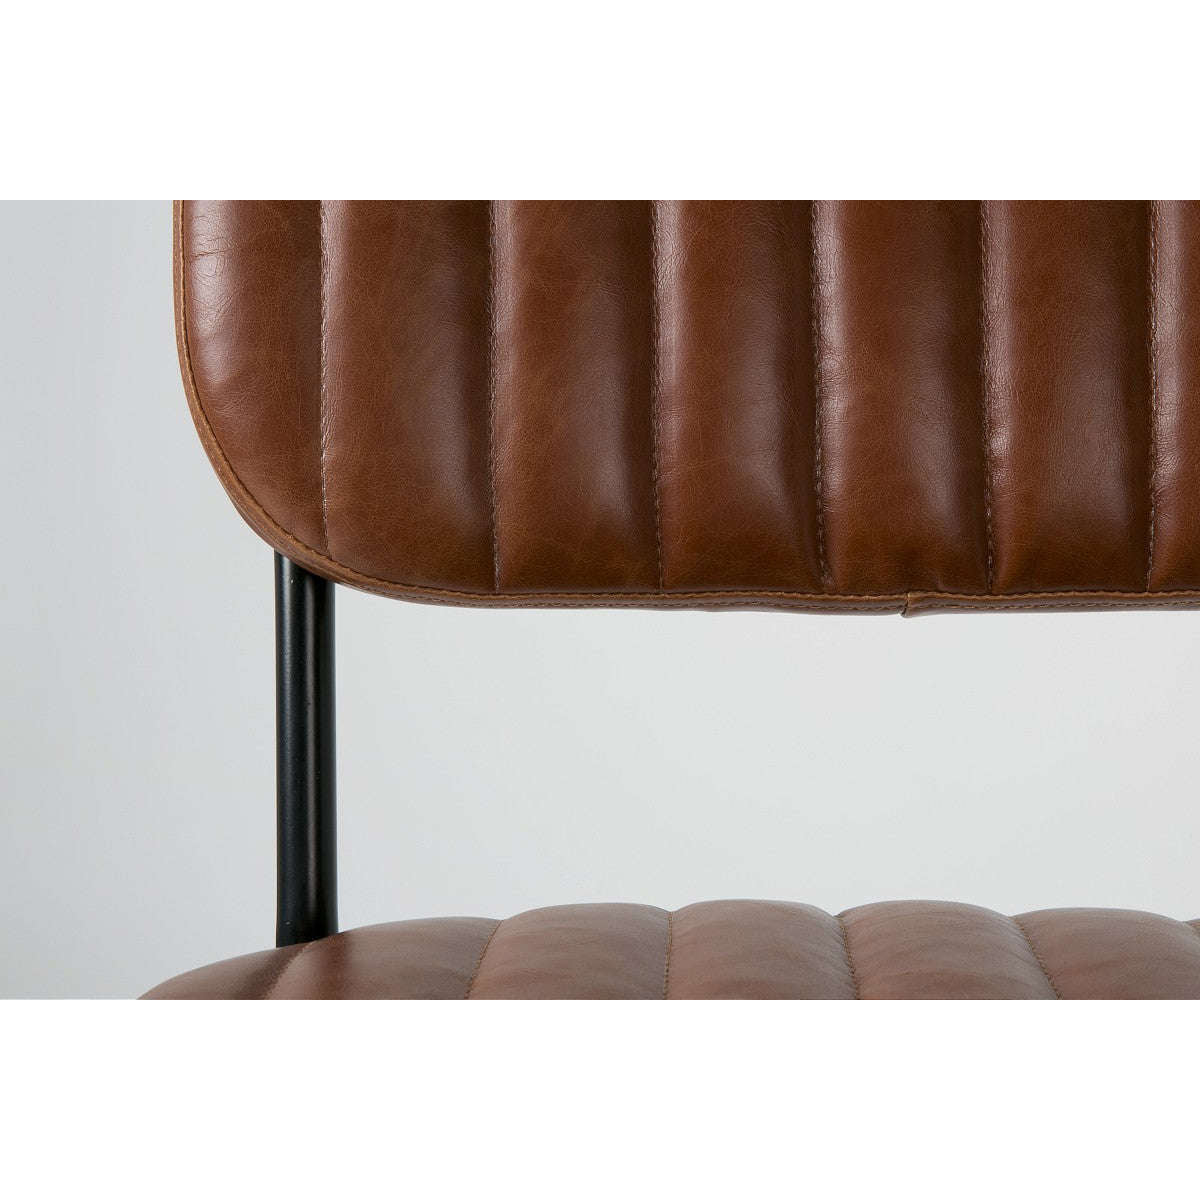 Staerkk stoel jake worn bruin 58 x 46 x 81 cm